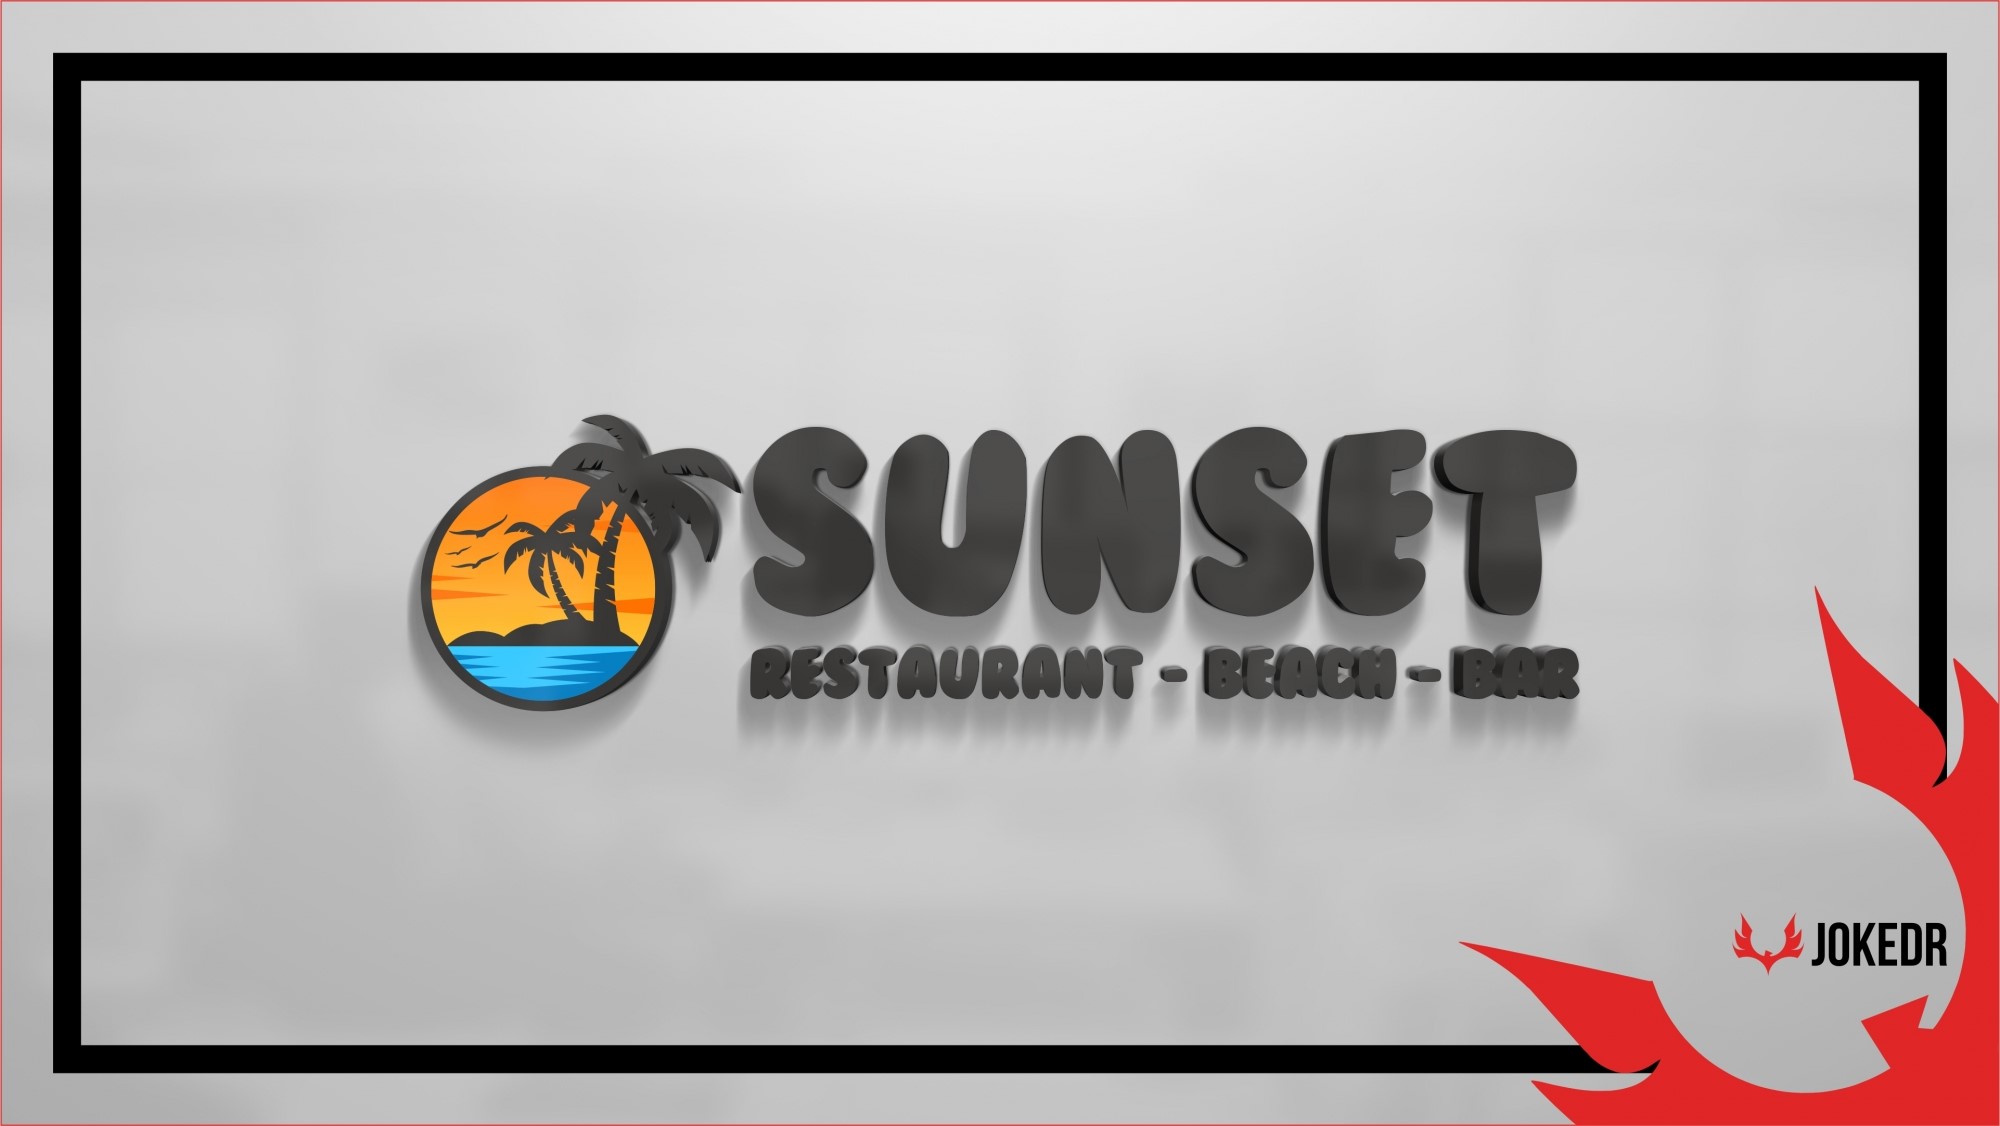 Sunset Beach-Restaurant-Bar